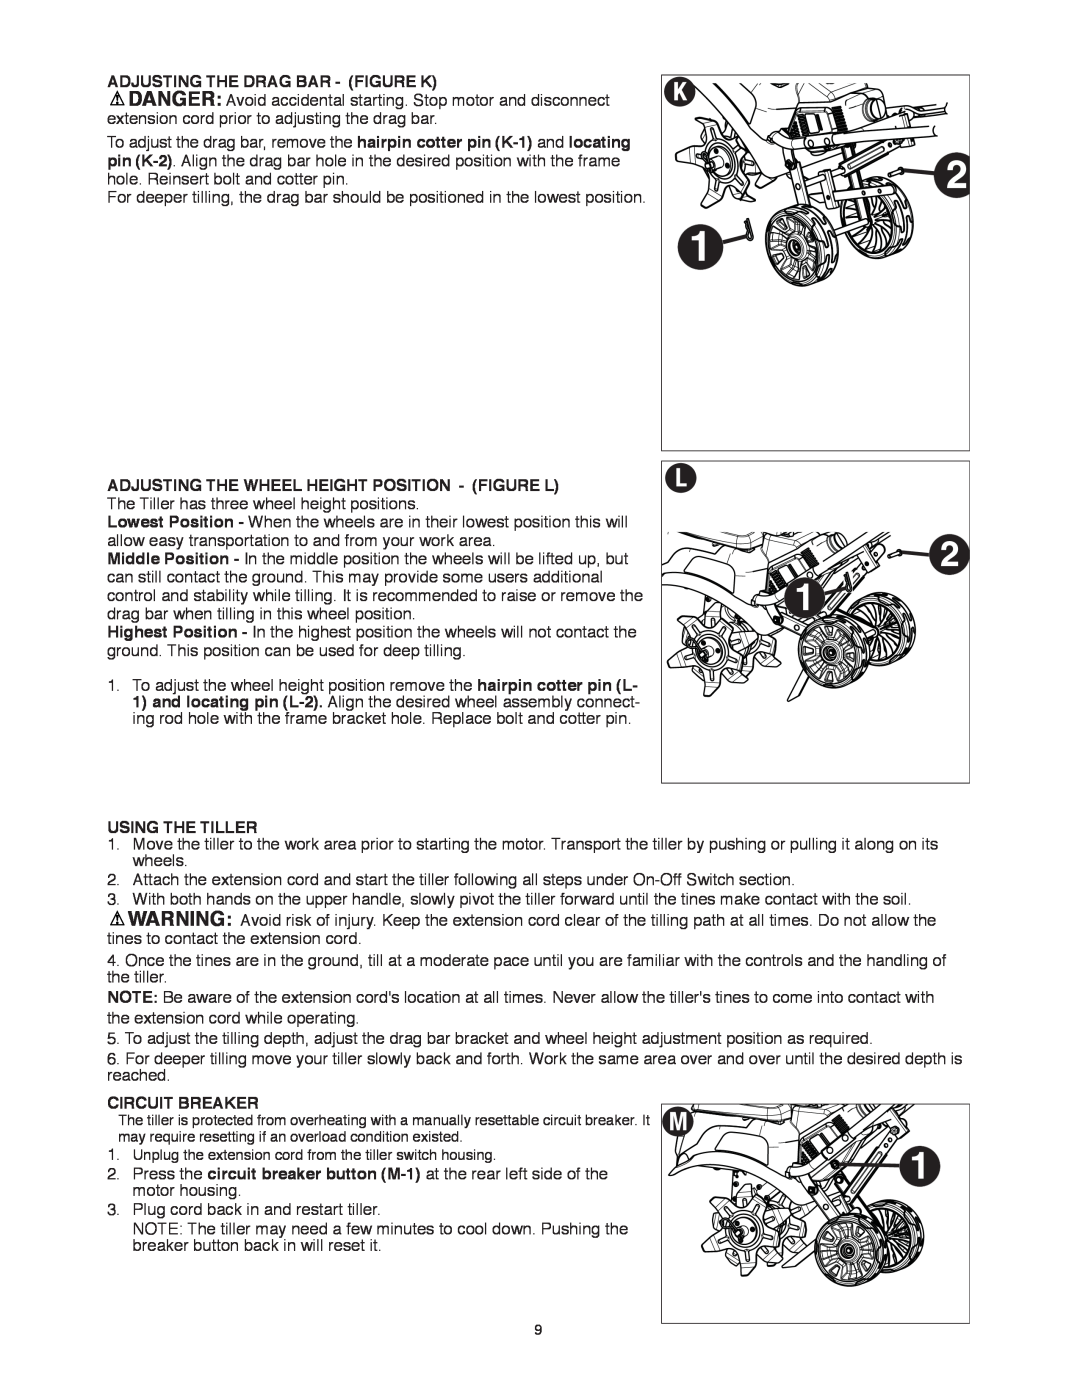 Black & Decker TL10 instruction manual Adjusting The Drag Bar - Figure K, Using The Tiller, Circuit Breaker 